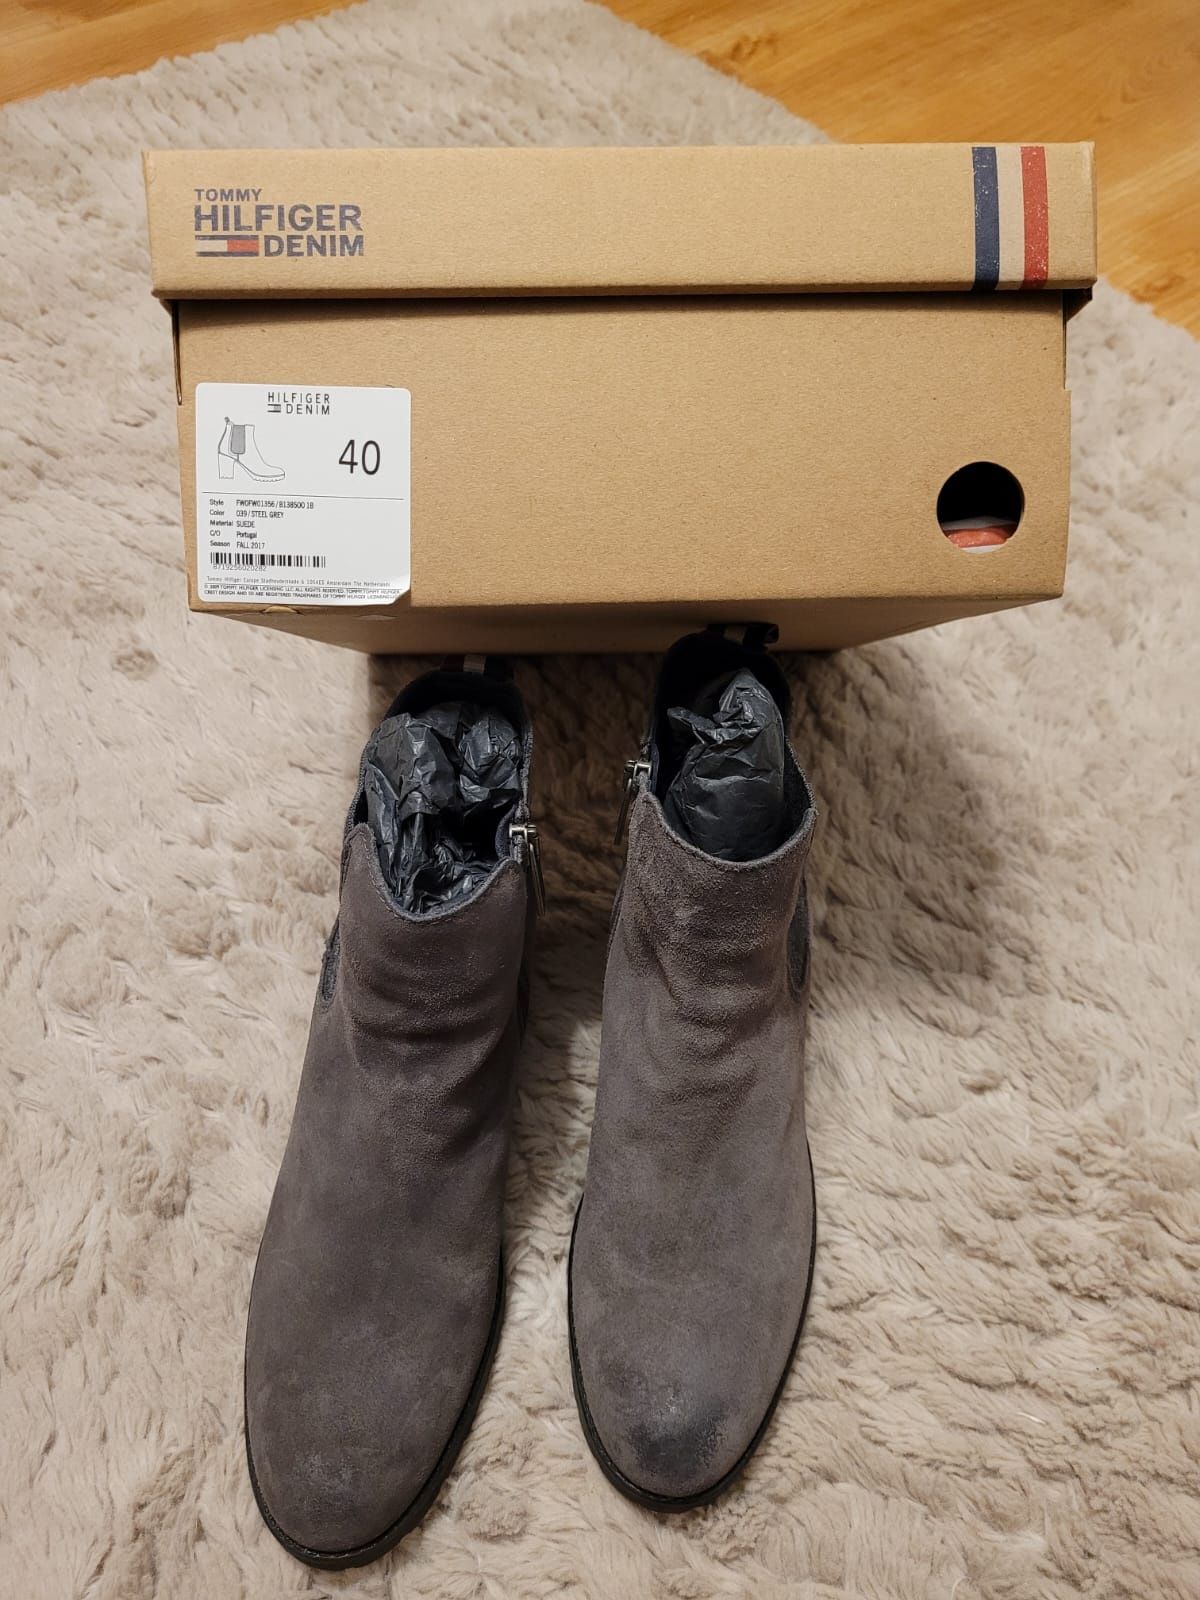 Botki damskie buty kobiece Tommy Hilfiger nowe rozmiar 40 szare stalow